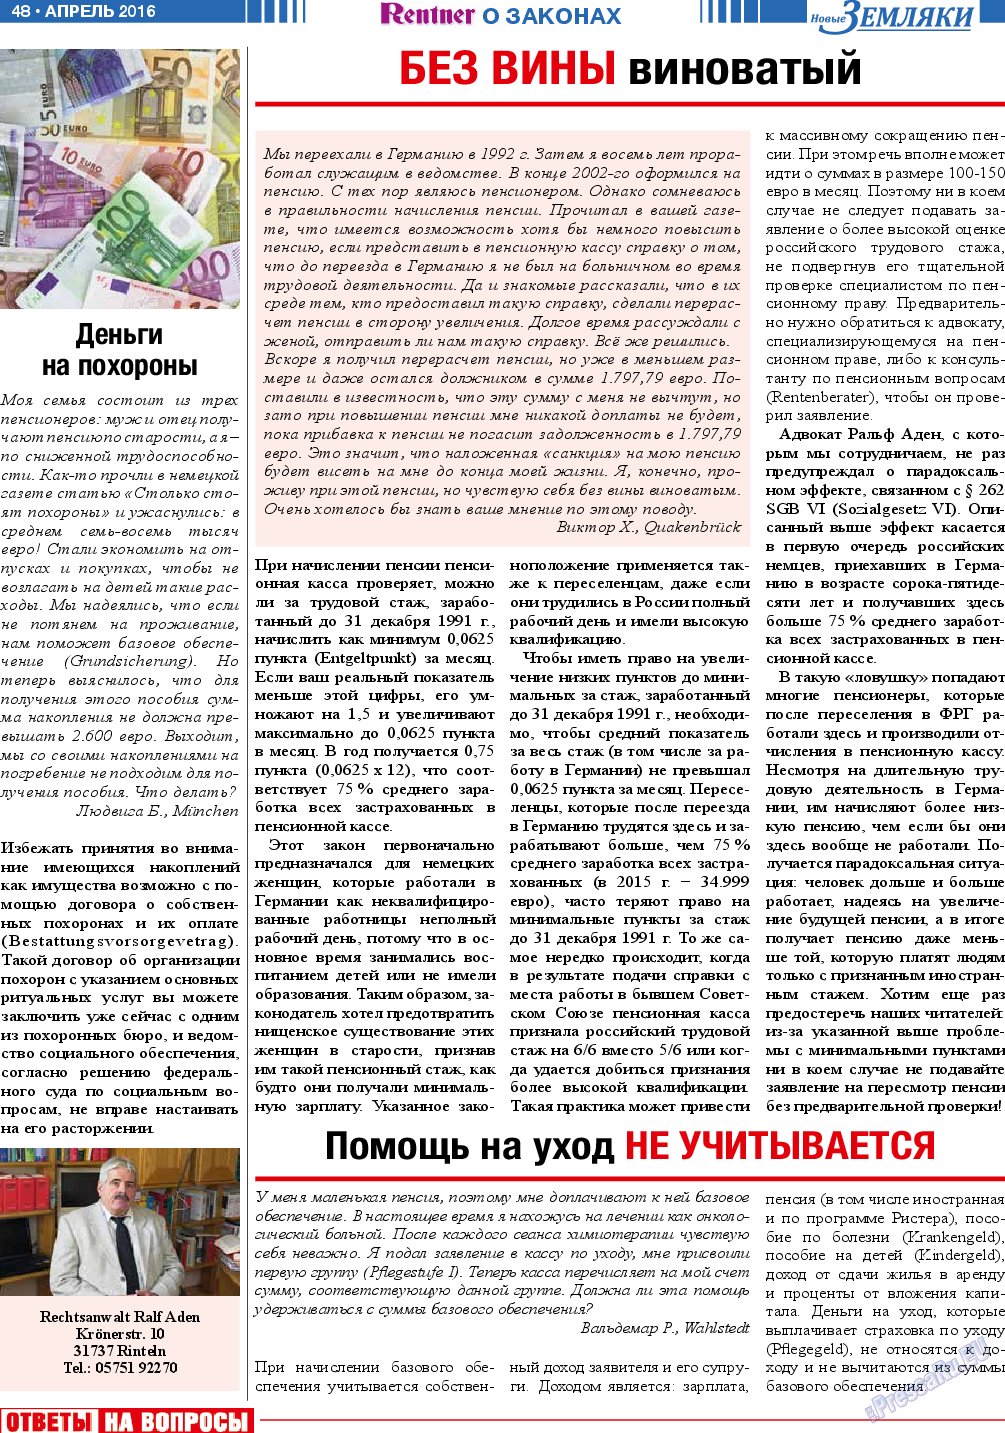 Новые Земляки, газета. 2016 №4 стр.48